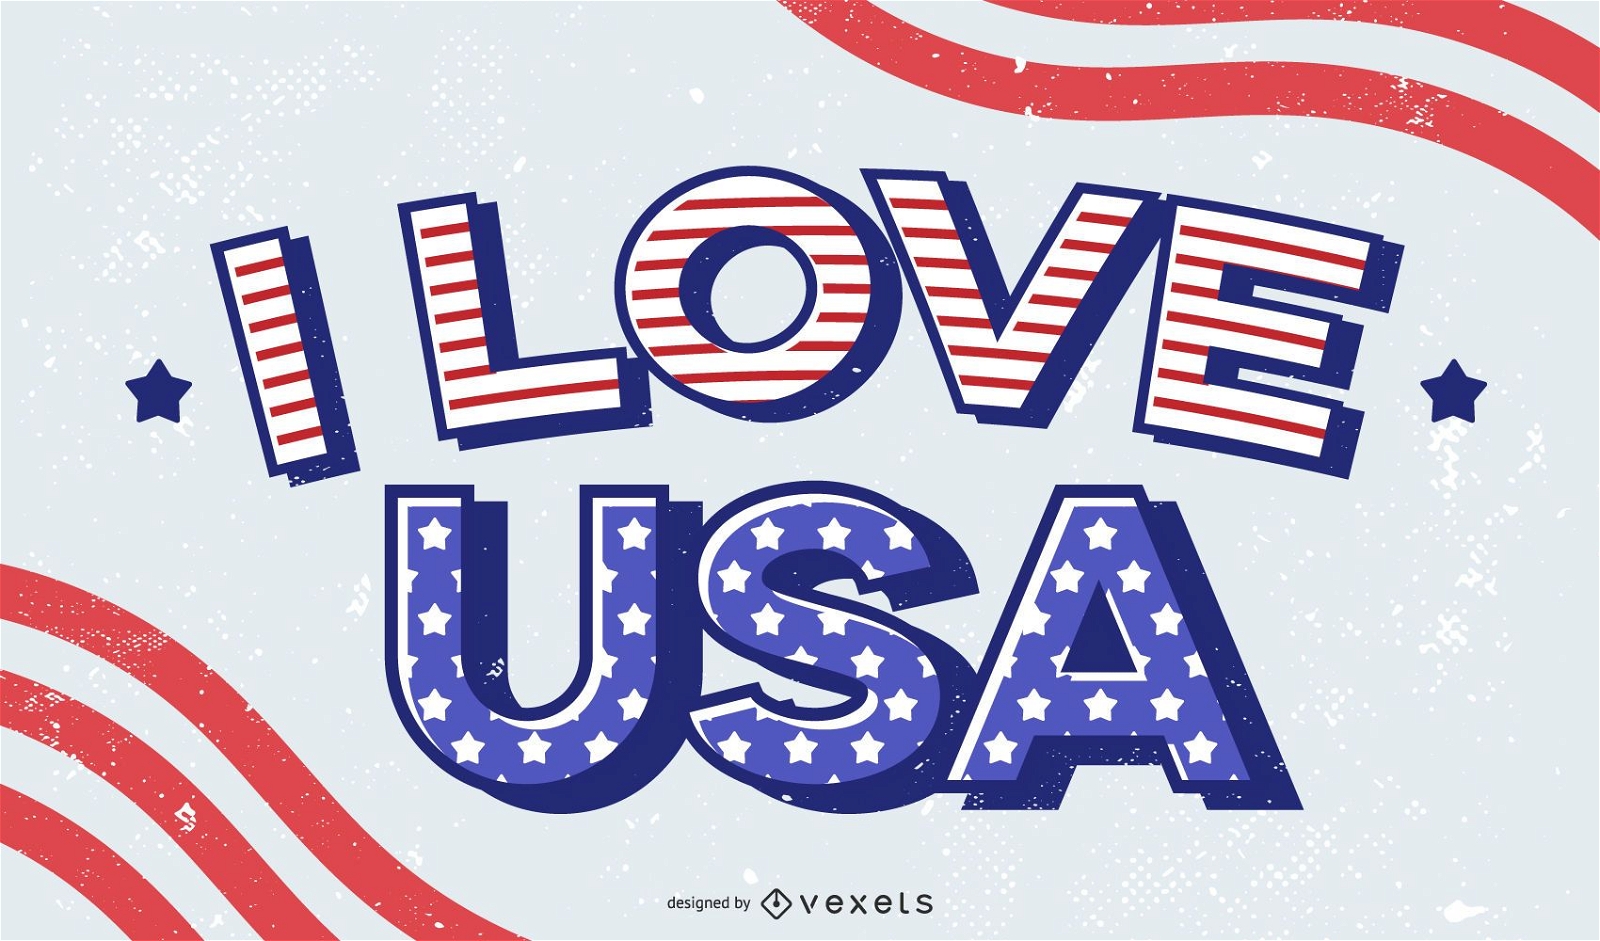 Me encanta el diseño de letras de Estados Unidos